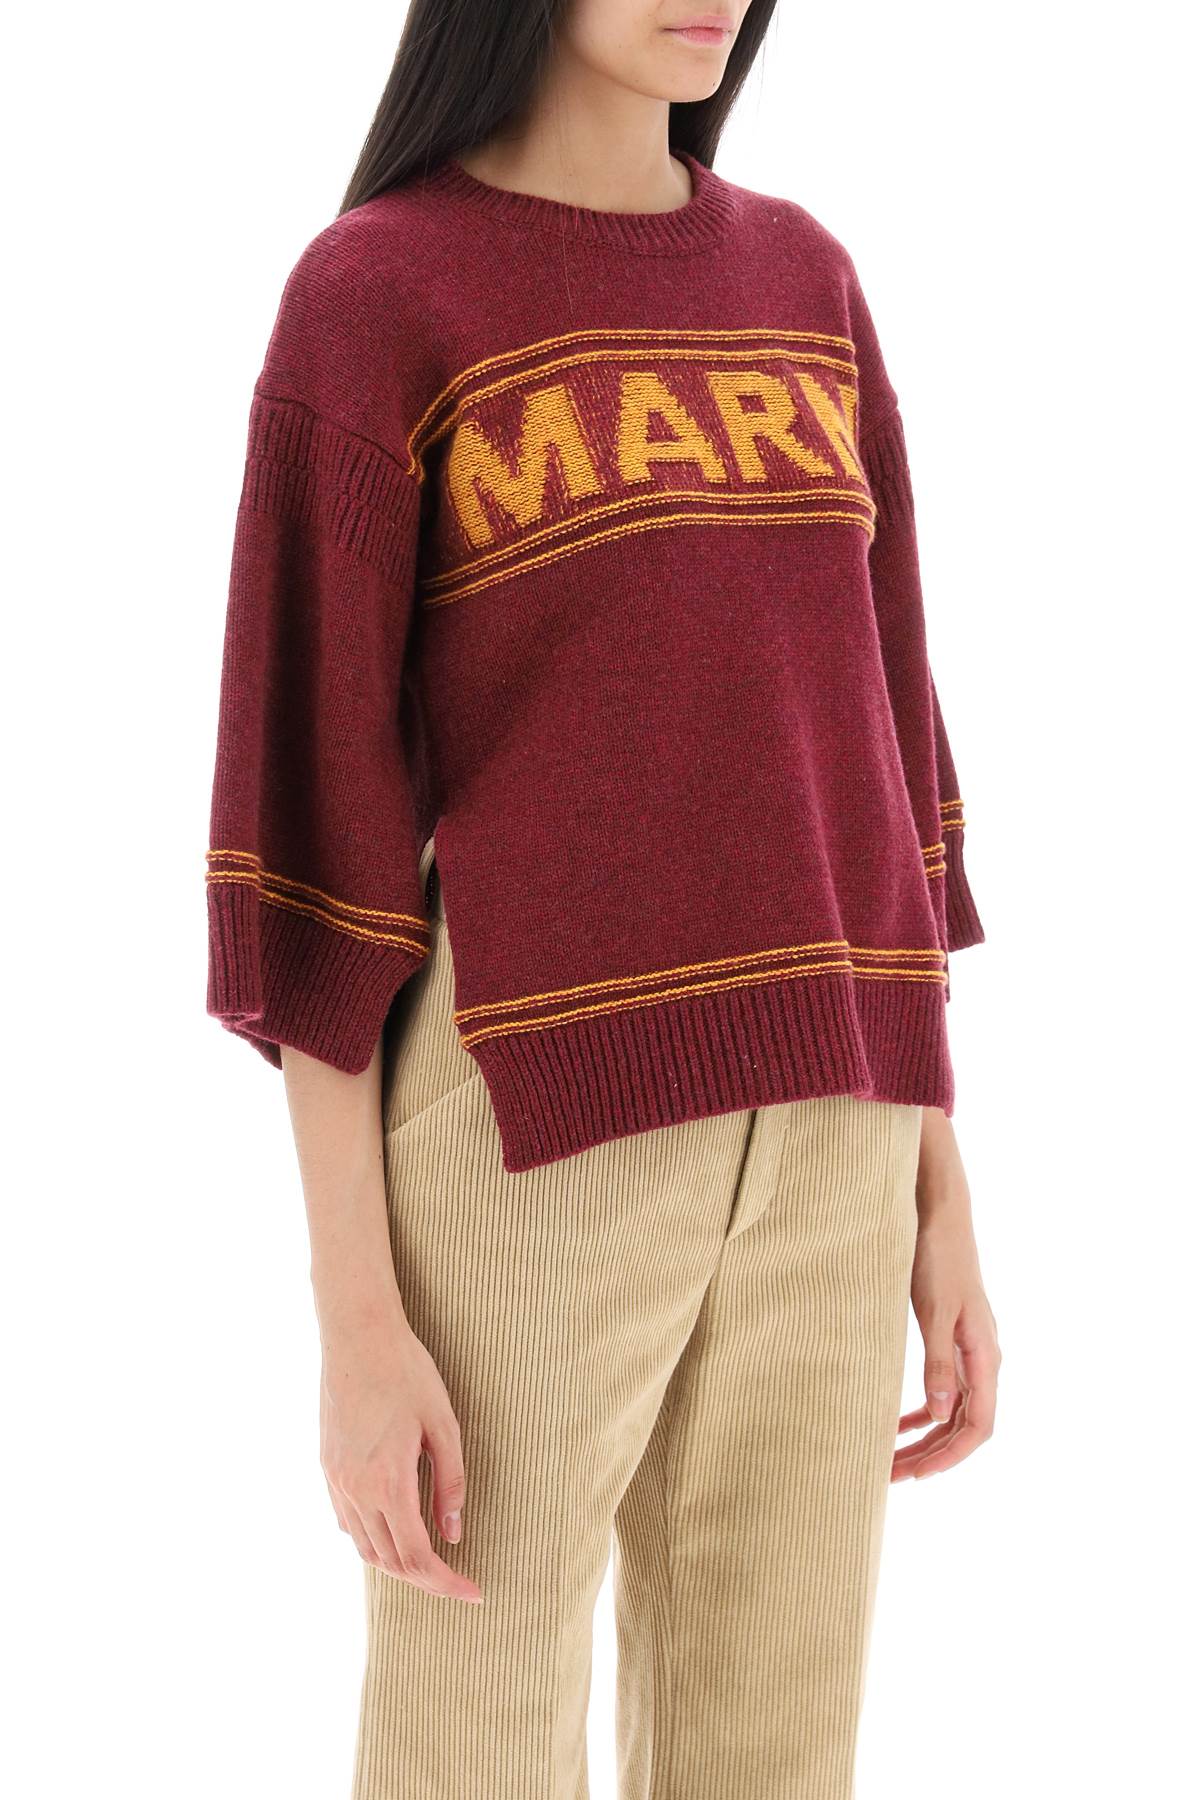 Marni sweater in jacquard knit with logo-Marni-Urbanheer